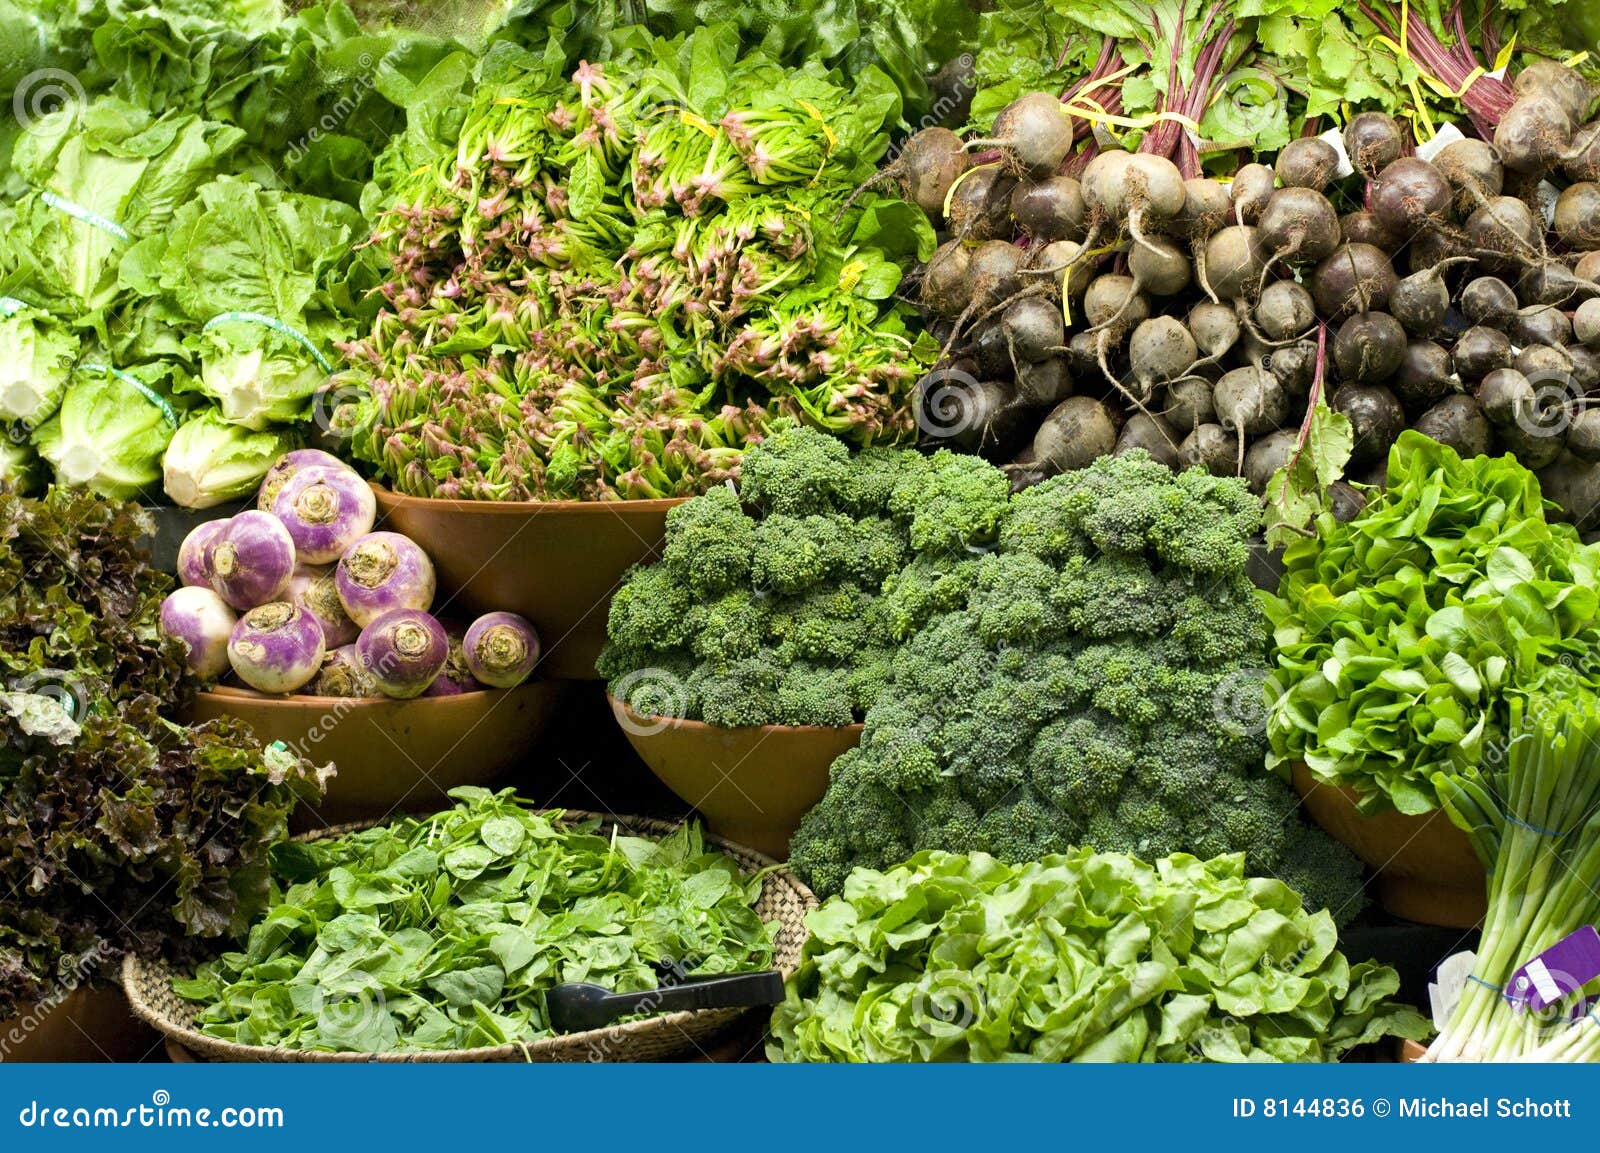 Продукты на растительной основе. Овощи и зелень. Растительная пища. Растительная пища зелень. Продукты растения.